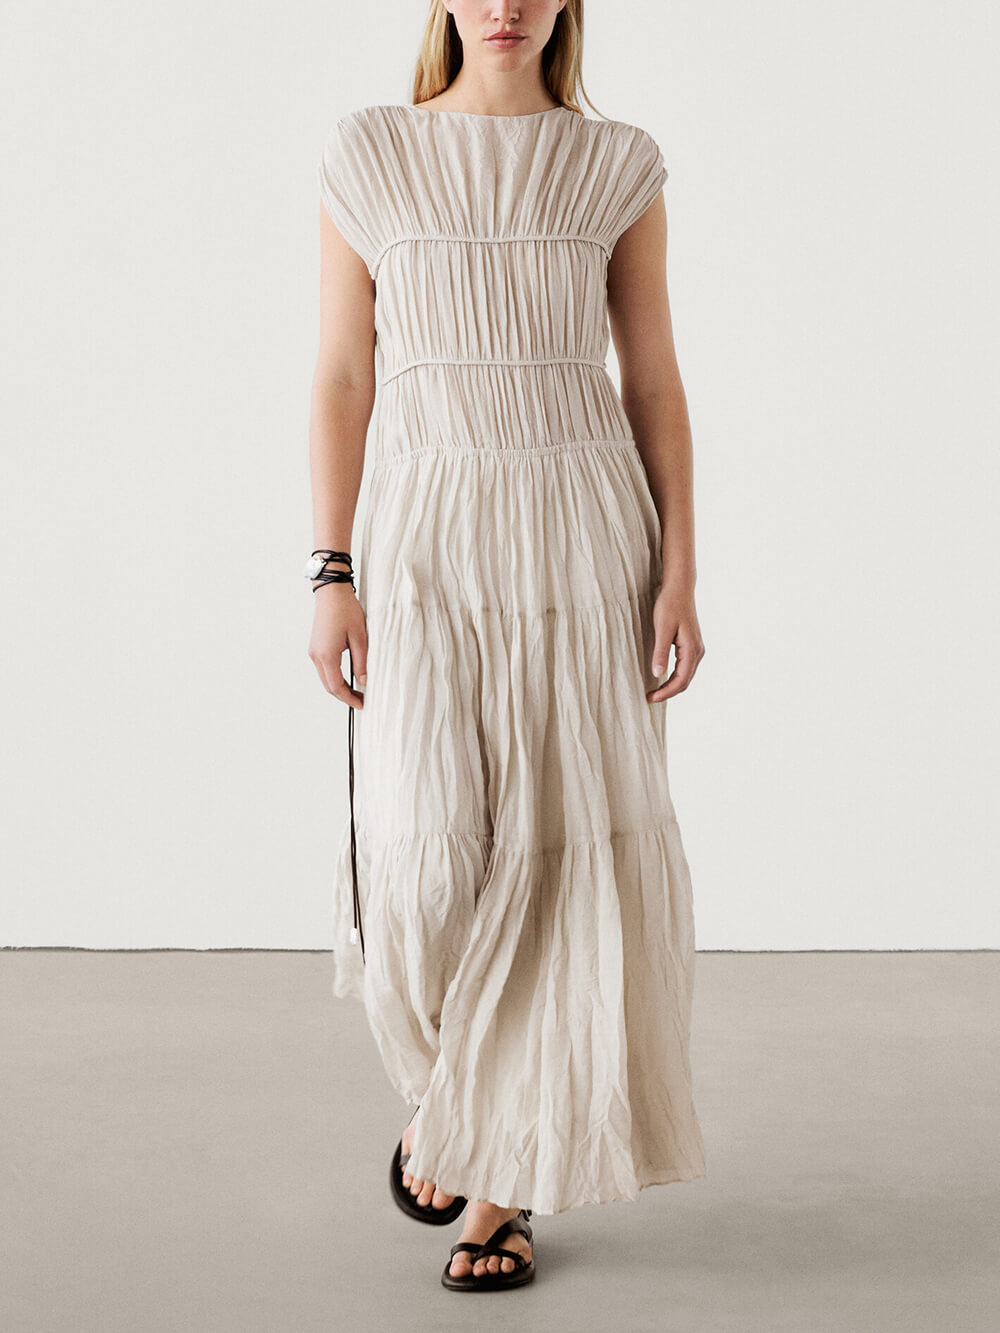 Wyjątkowa, dwustronna, sznurowana sukienka plisowana